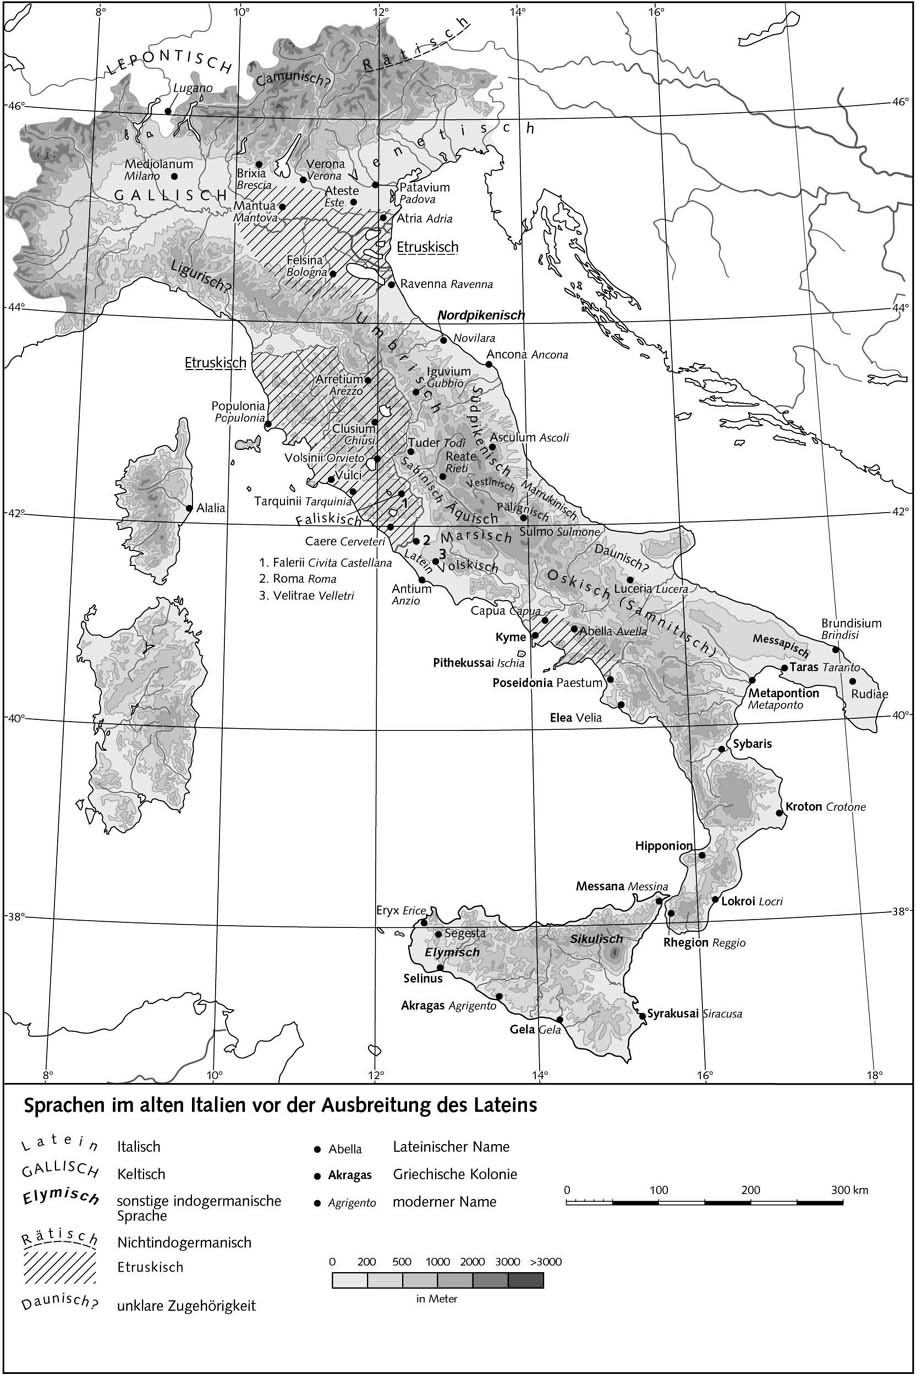 Языки в древней Италии до распространения латыни